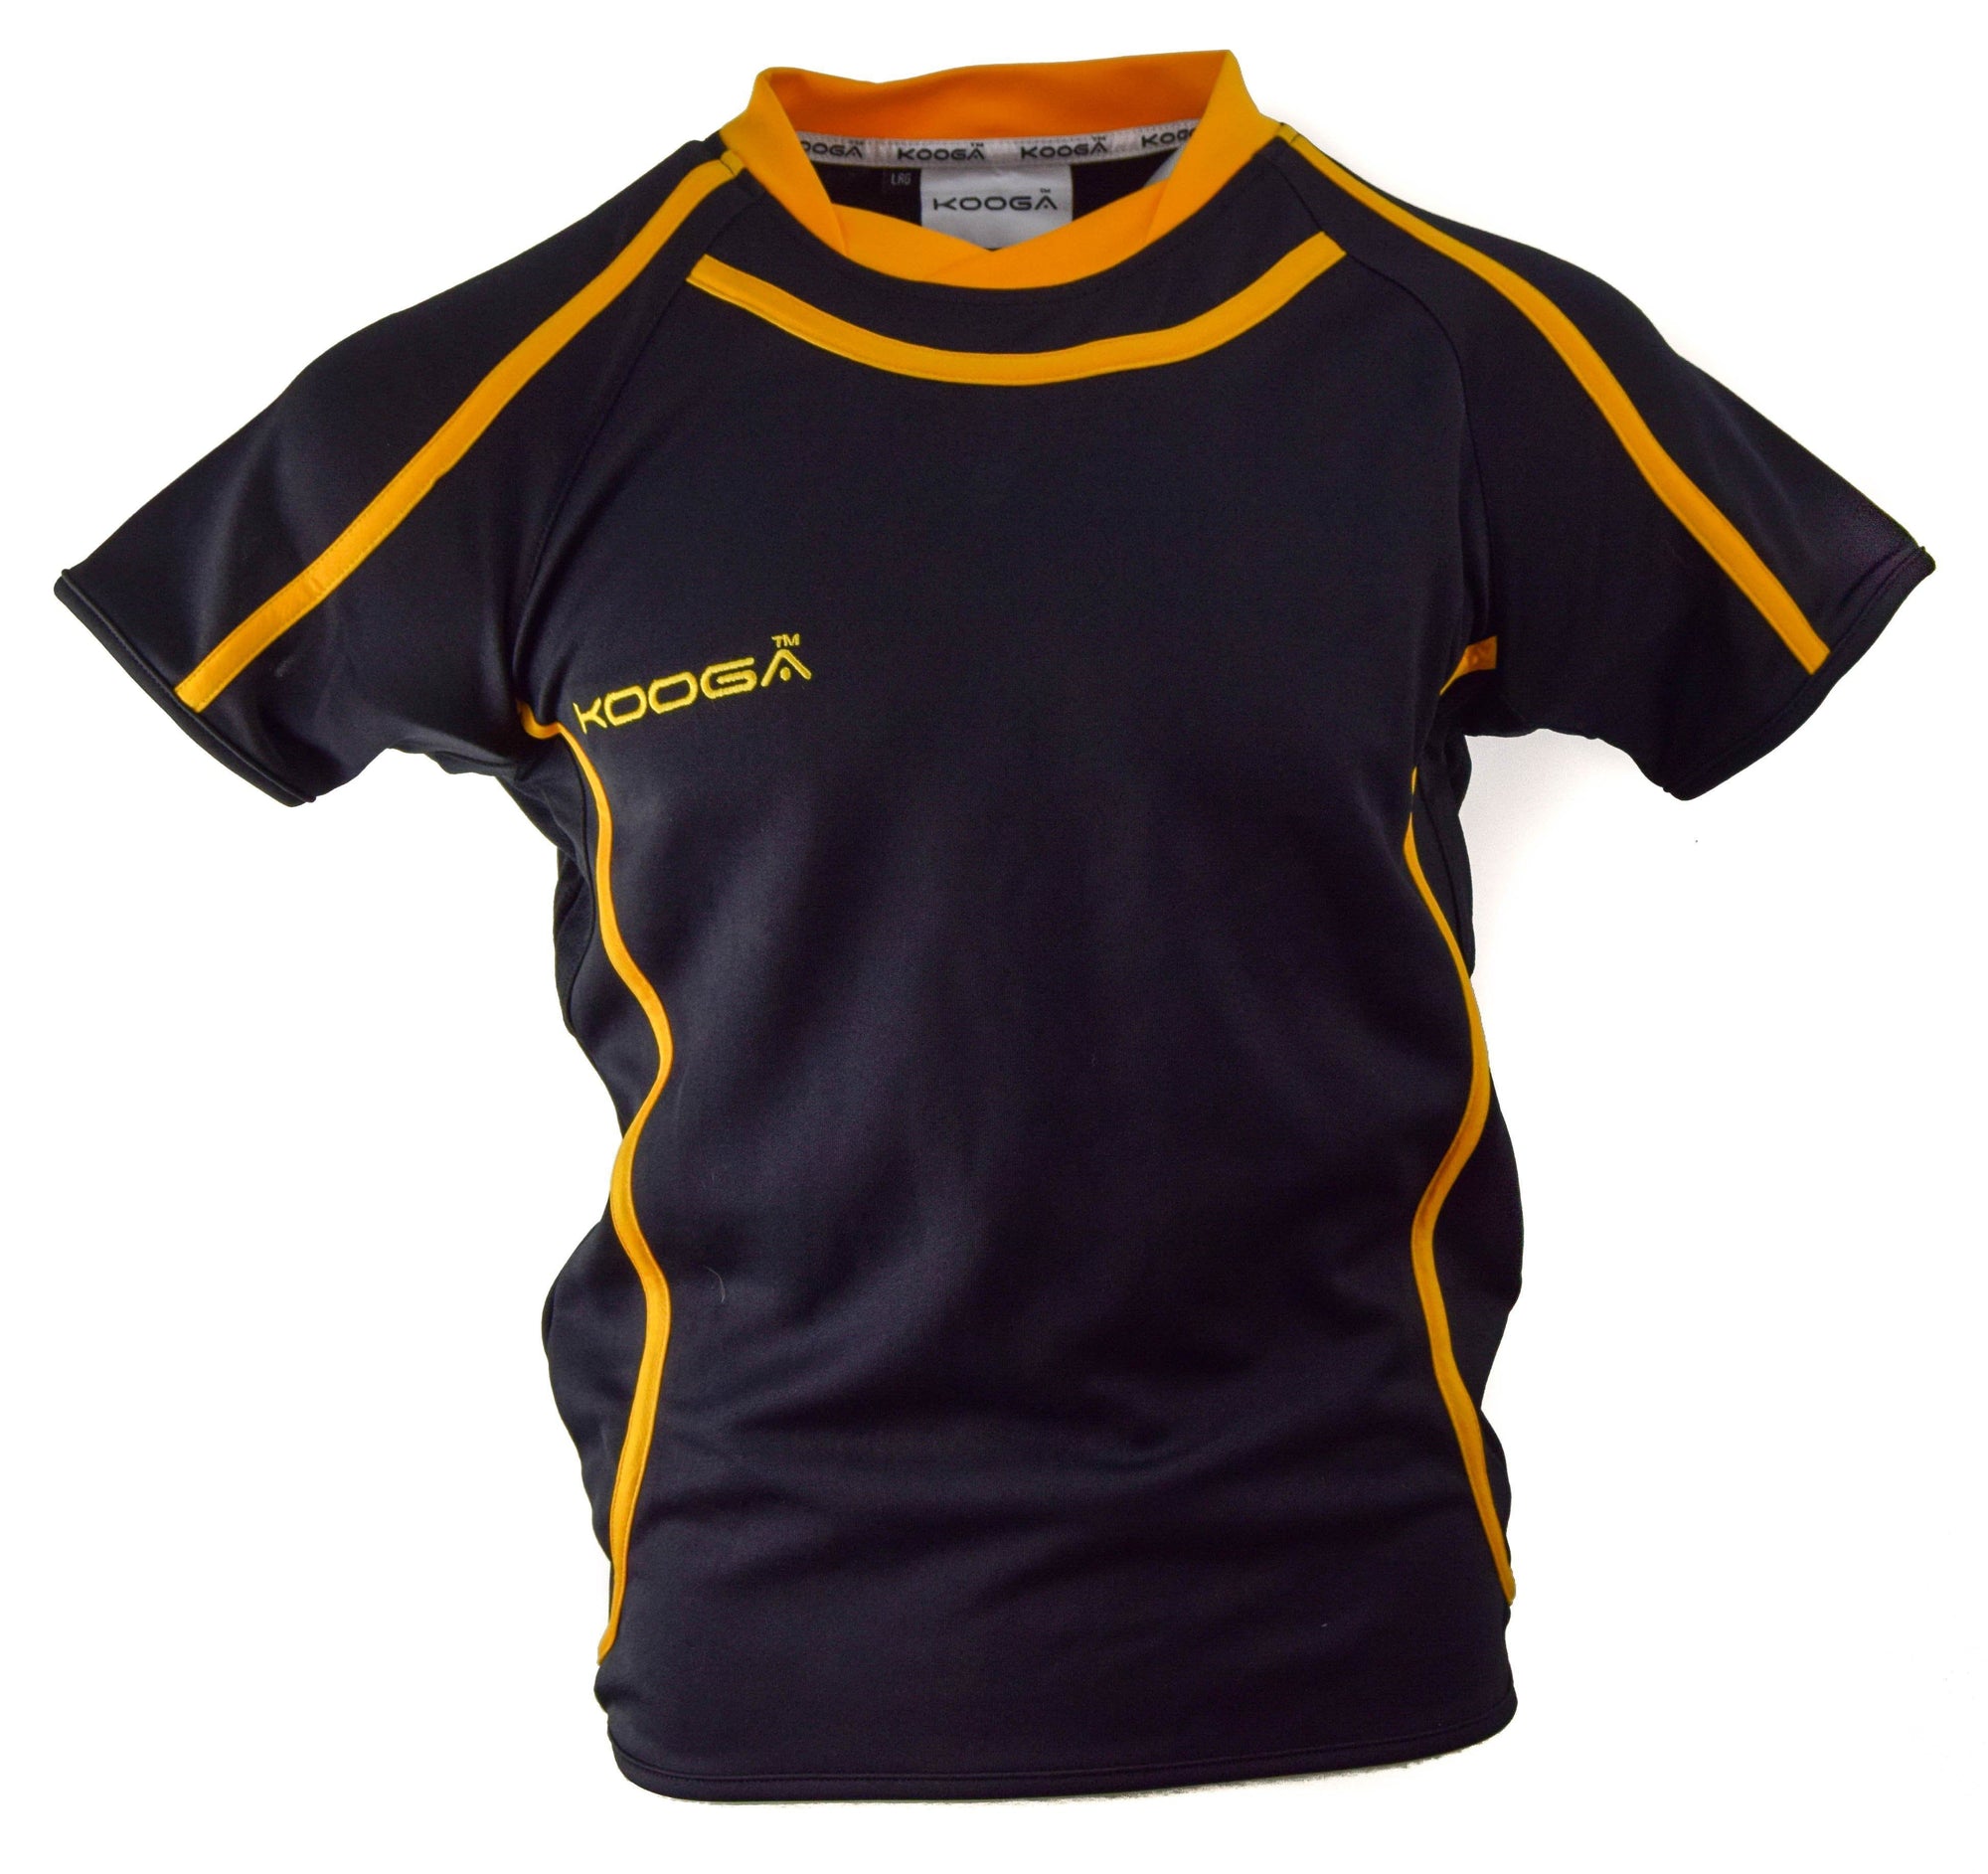 Kooga Burner Rugby Jersey (Black/Gold 